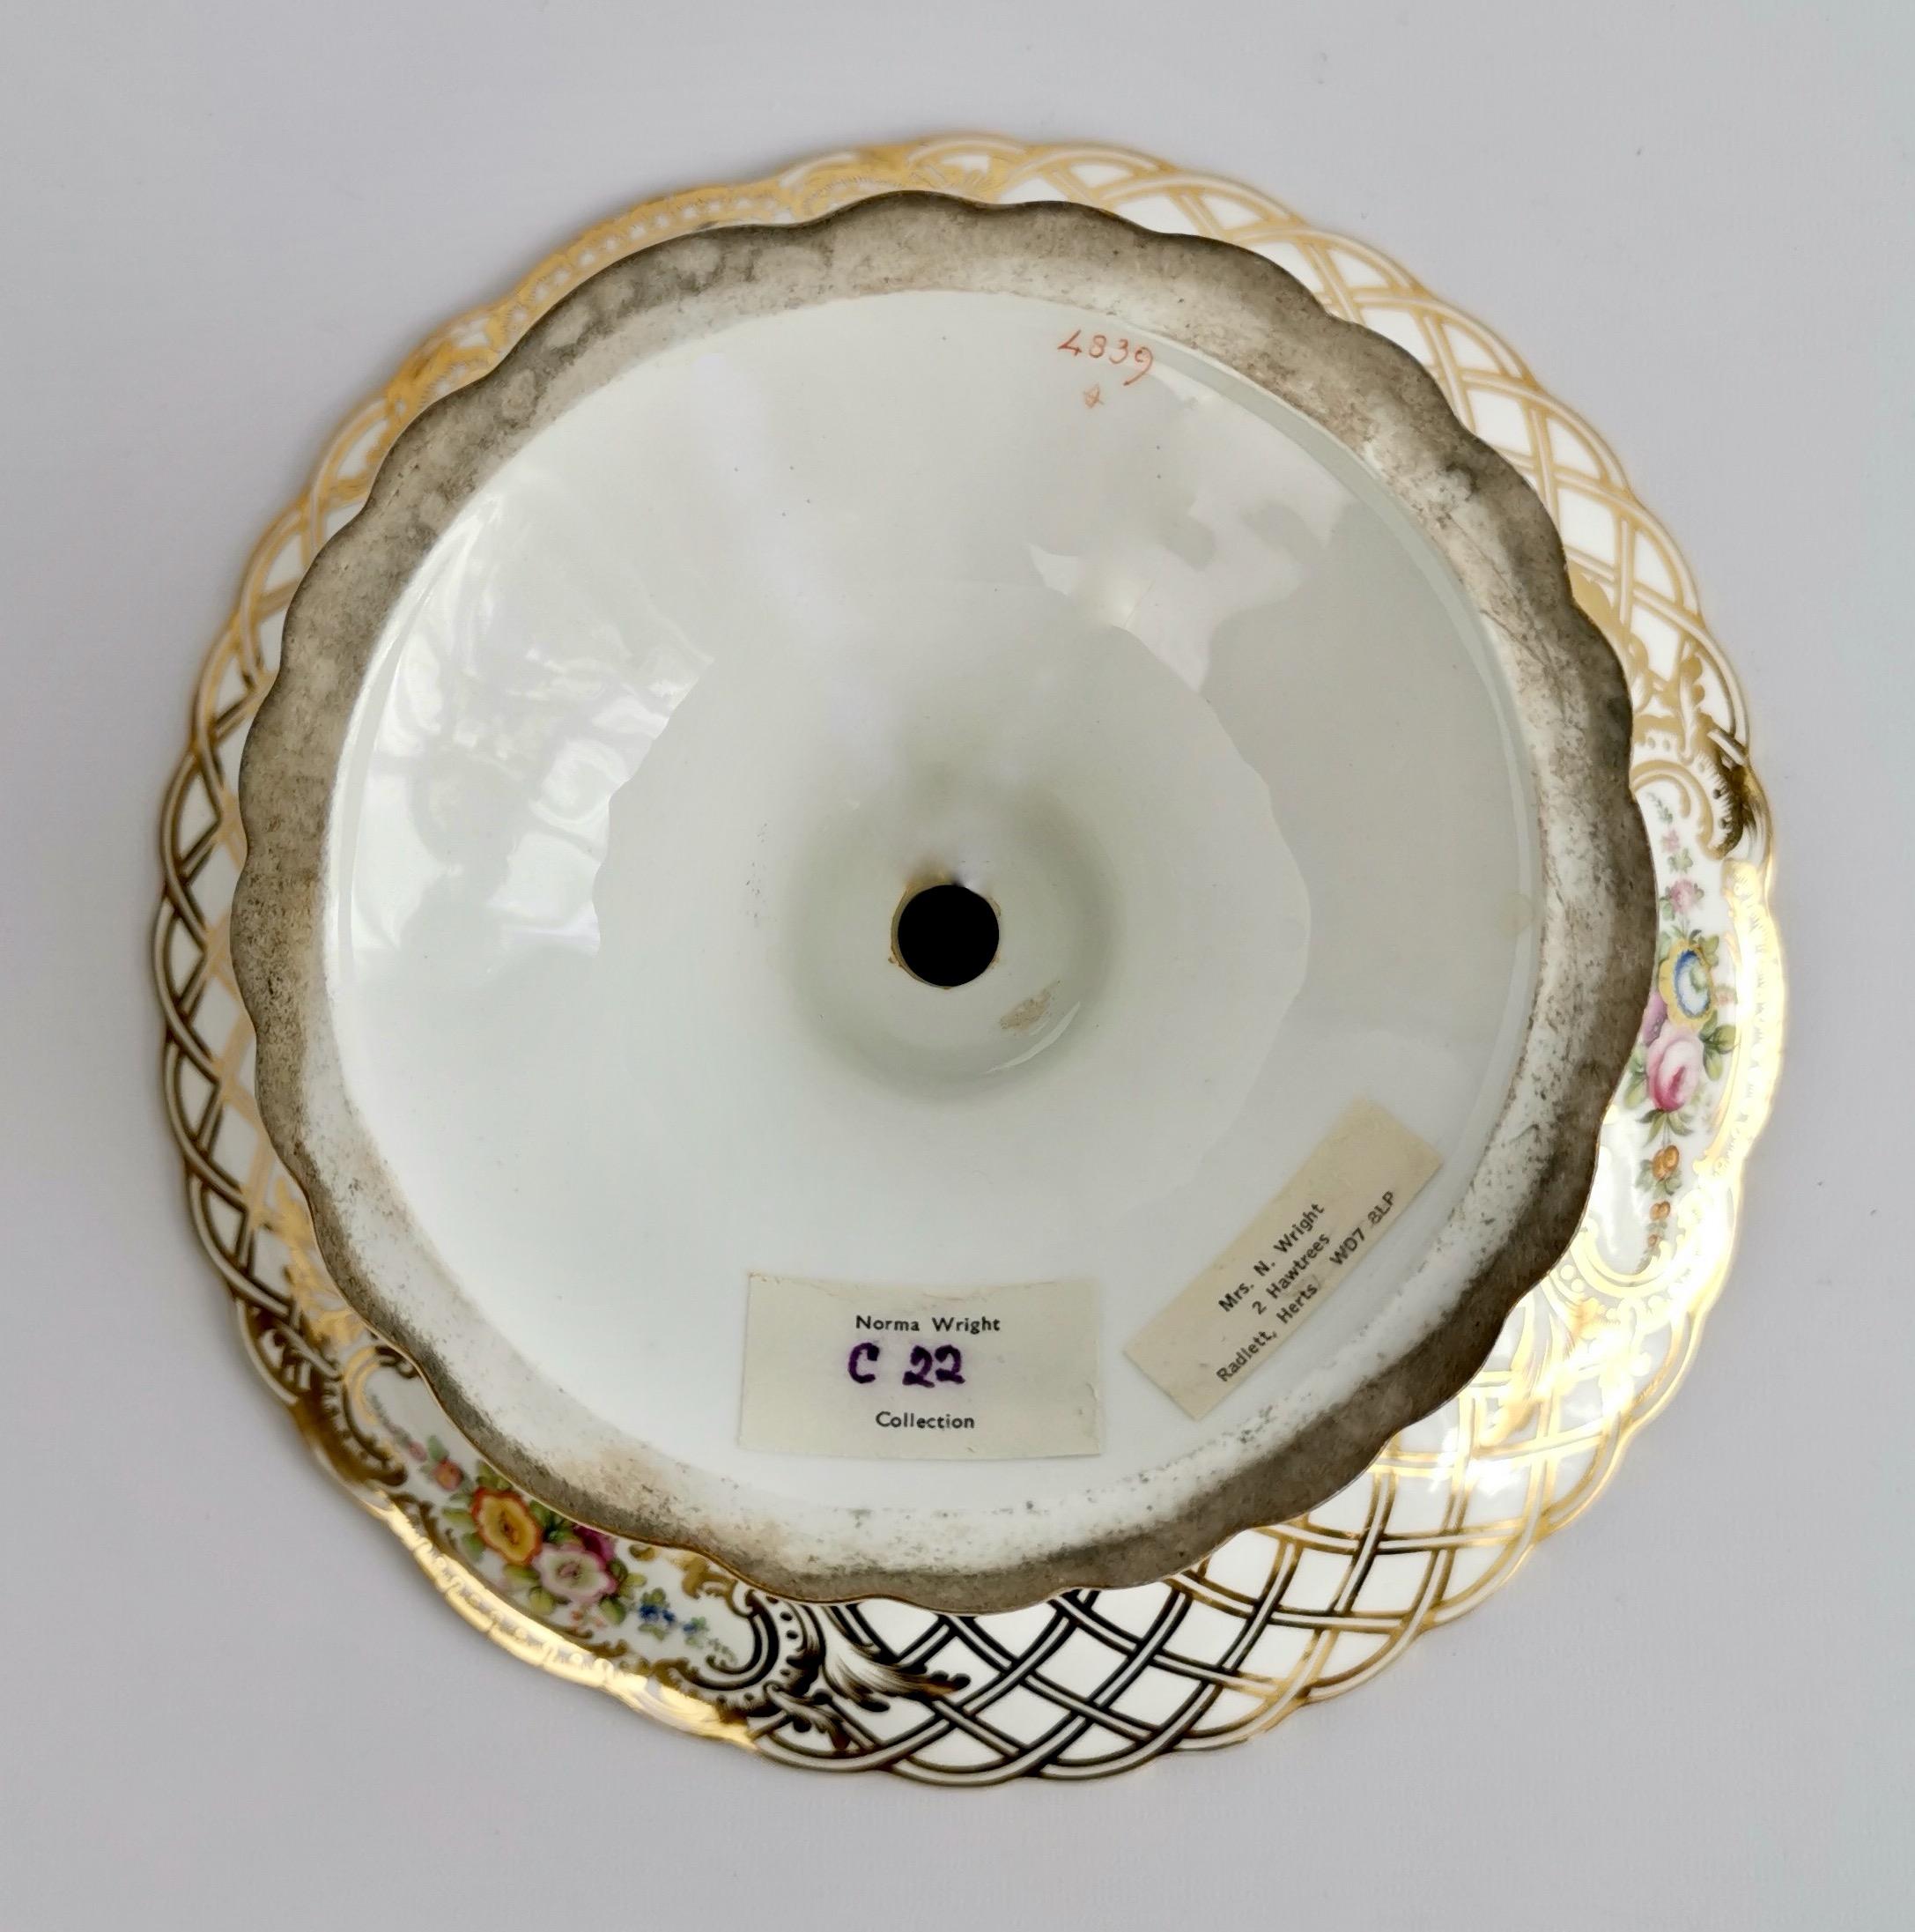 Minton Porcelain Dessert Service, White, Flowers J. Bancroft, Victorian, 1841 13